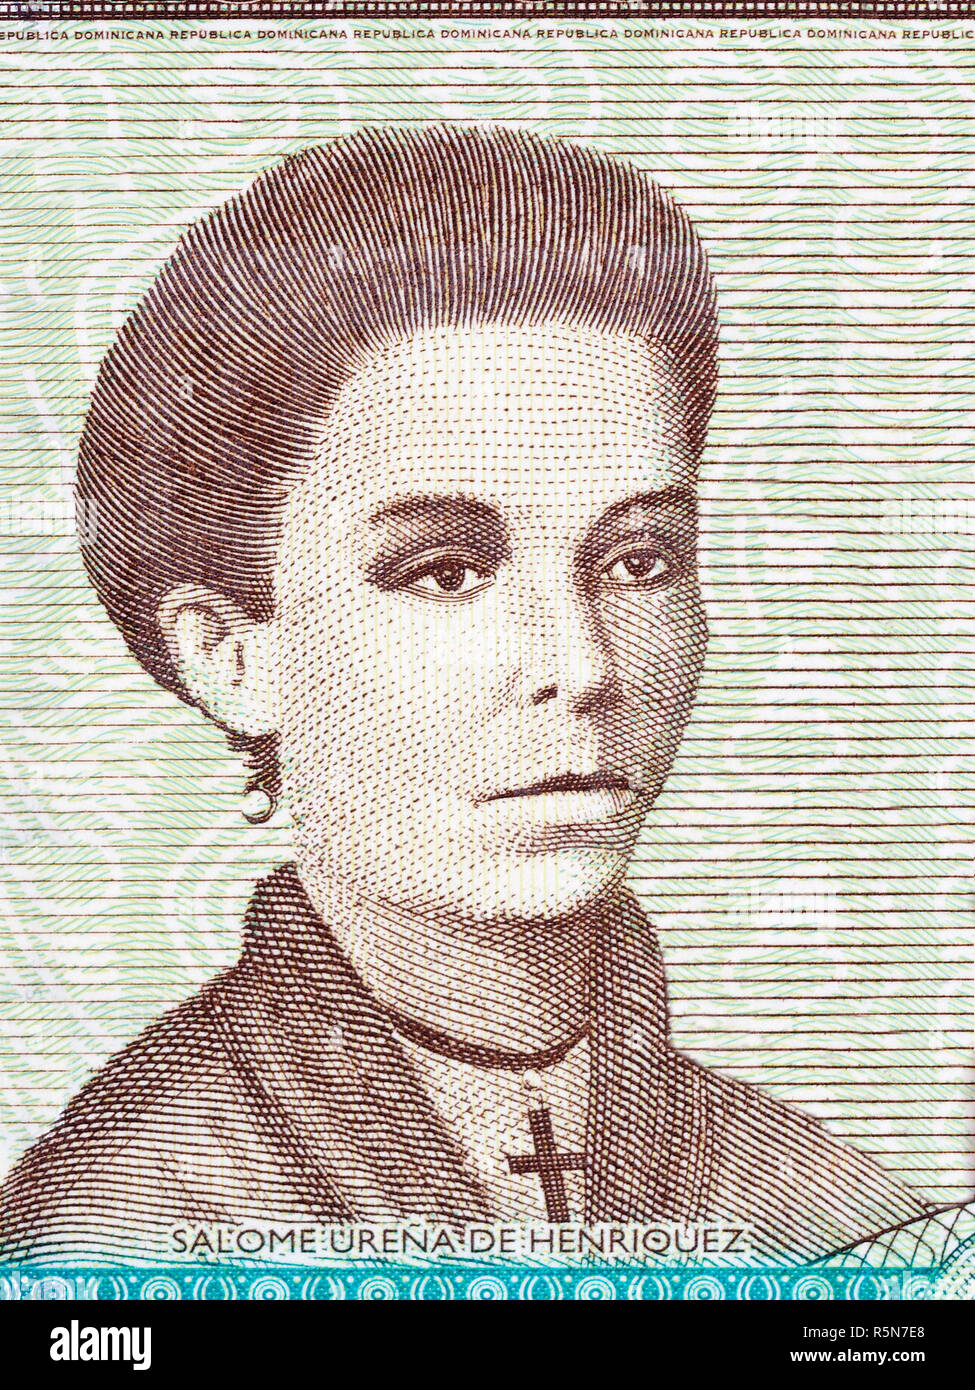 Salome Urena de Henriquez portrait Stock Photo